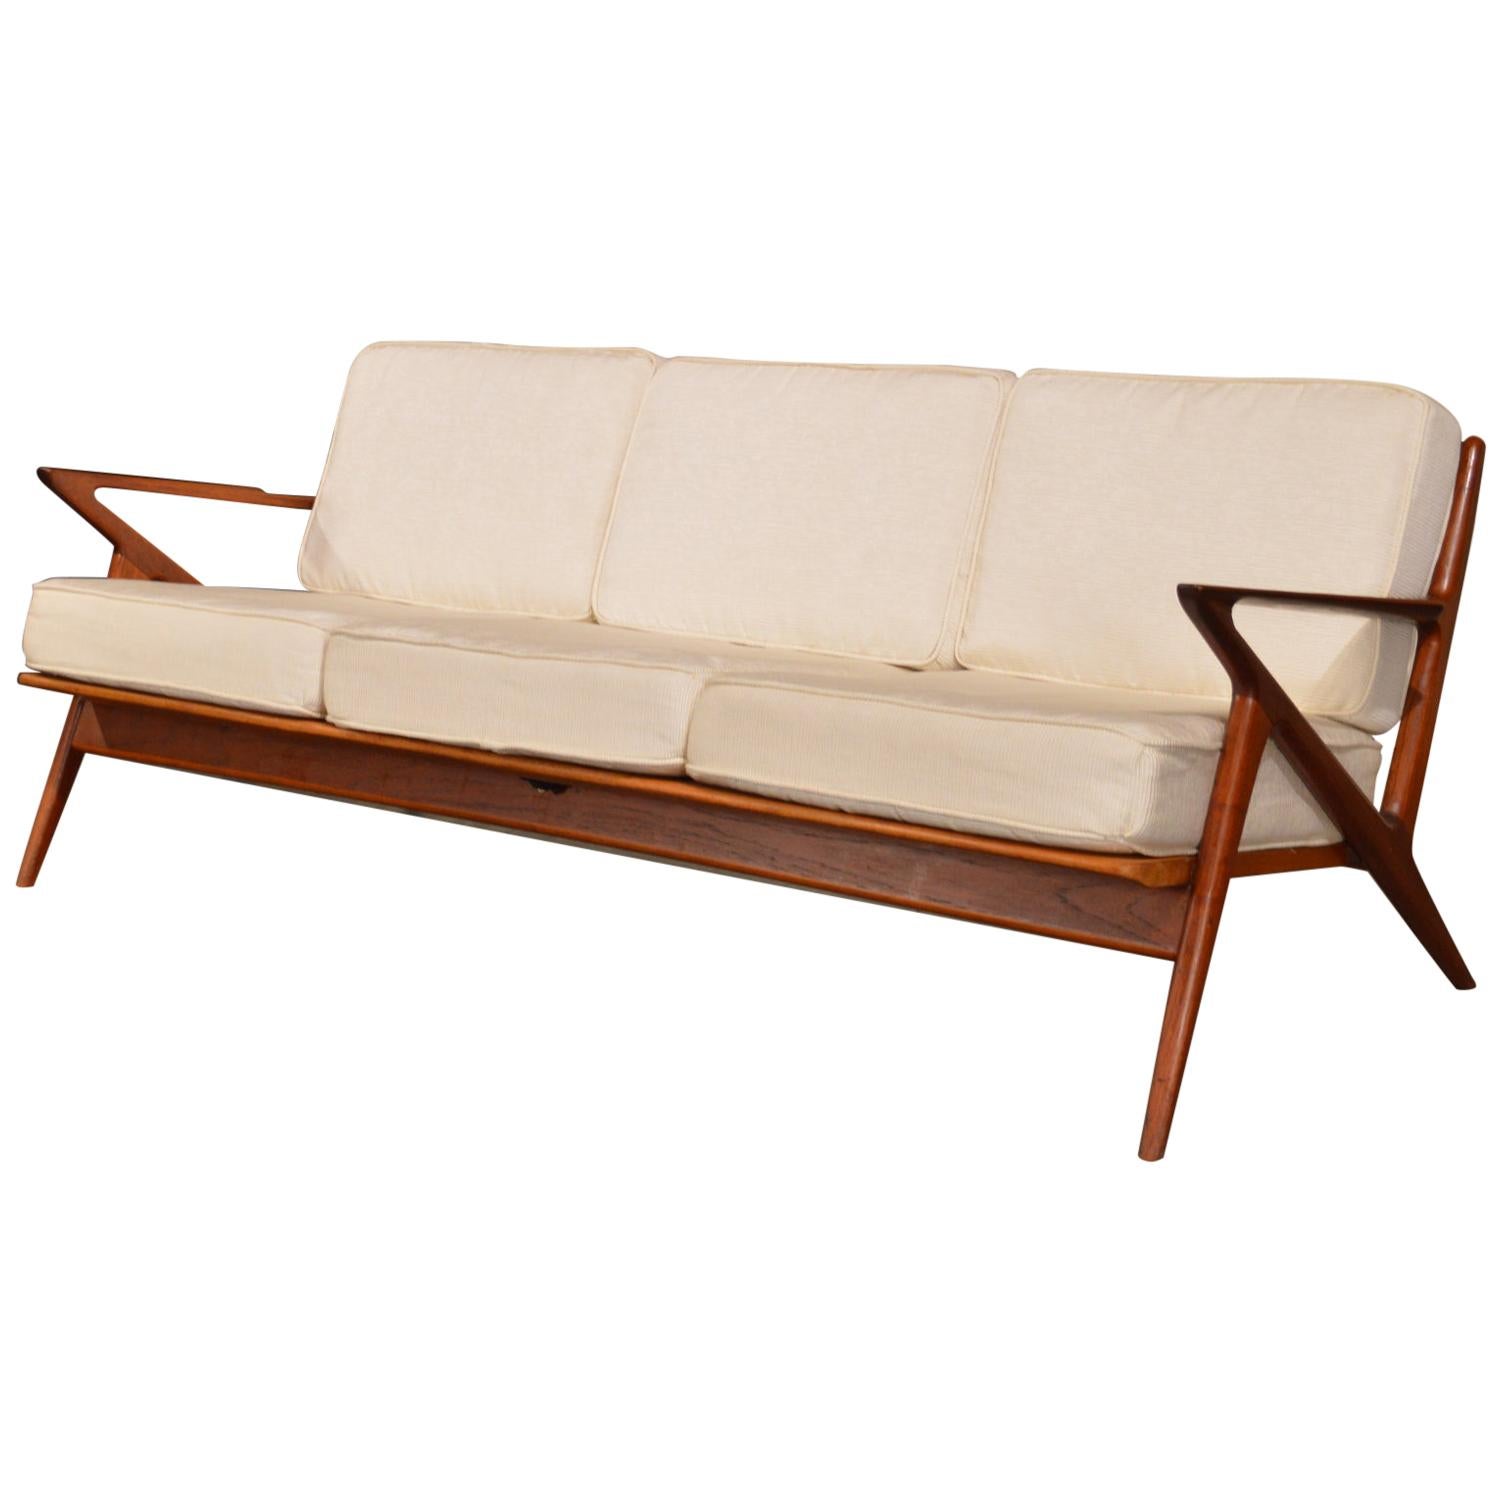 'Z' Sofa by Poul Jensen for Selig - 3 Seat